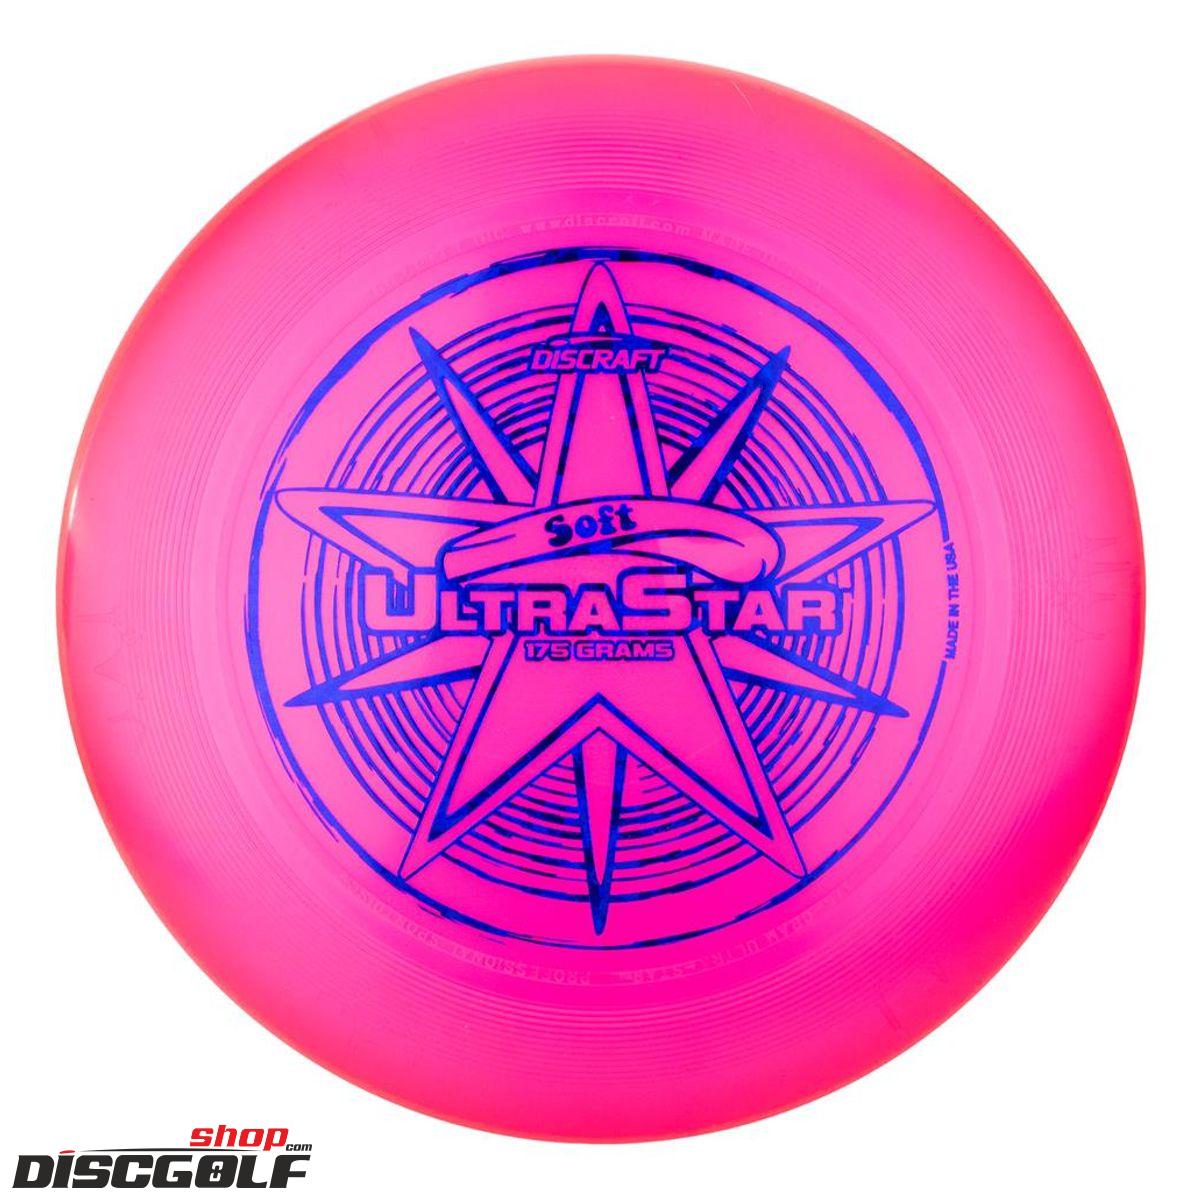 Discraft UltraStar Soft Růžová/Pink (discgolf)